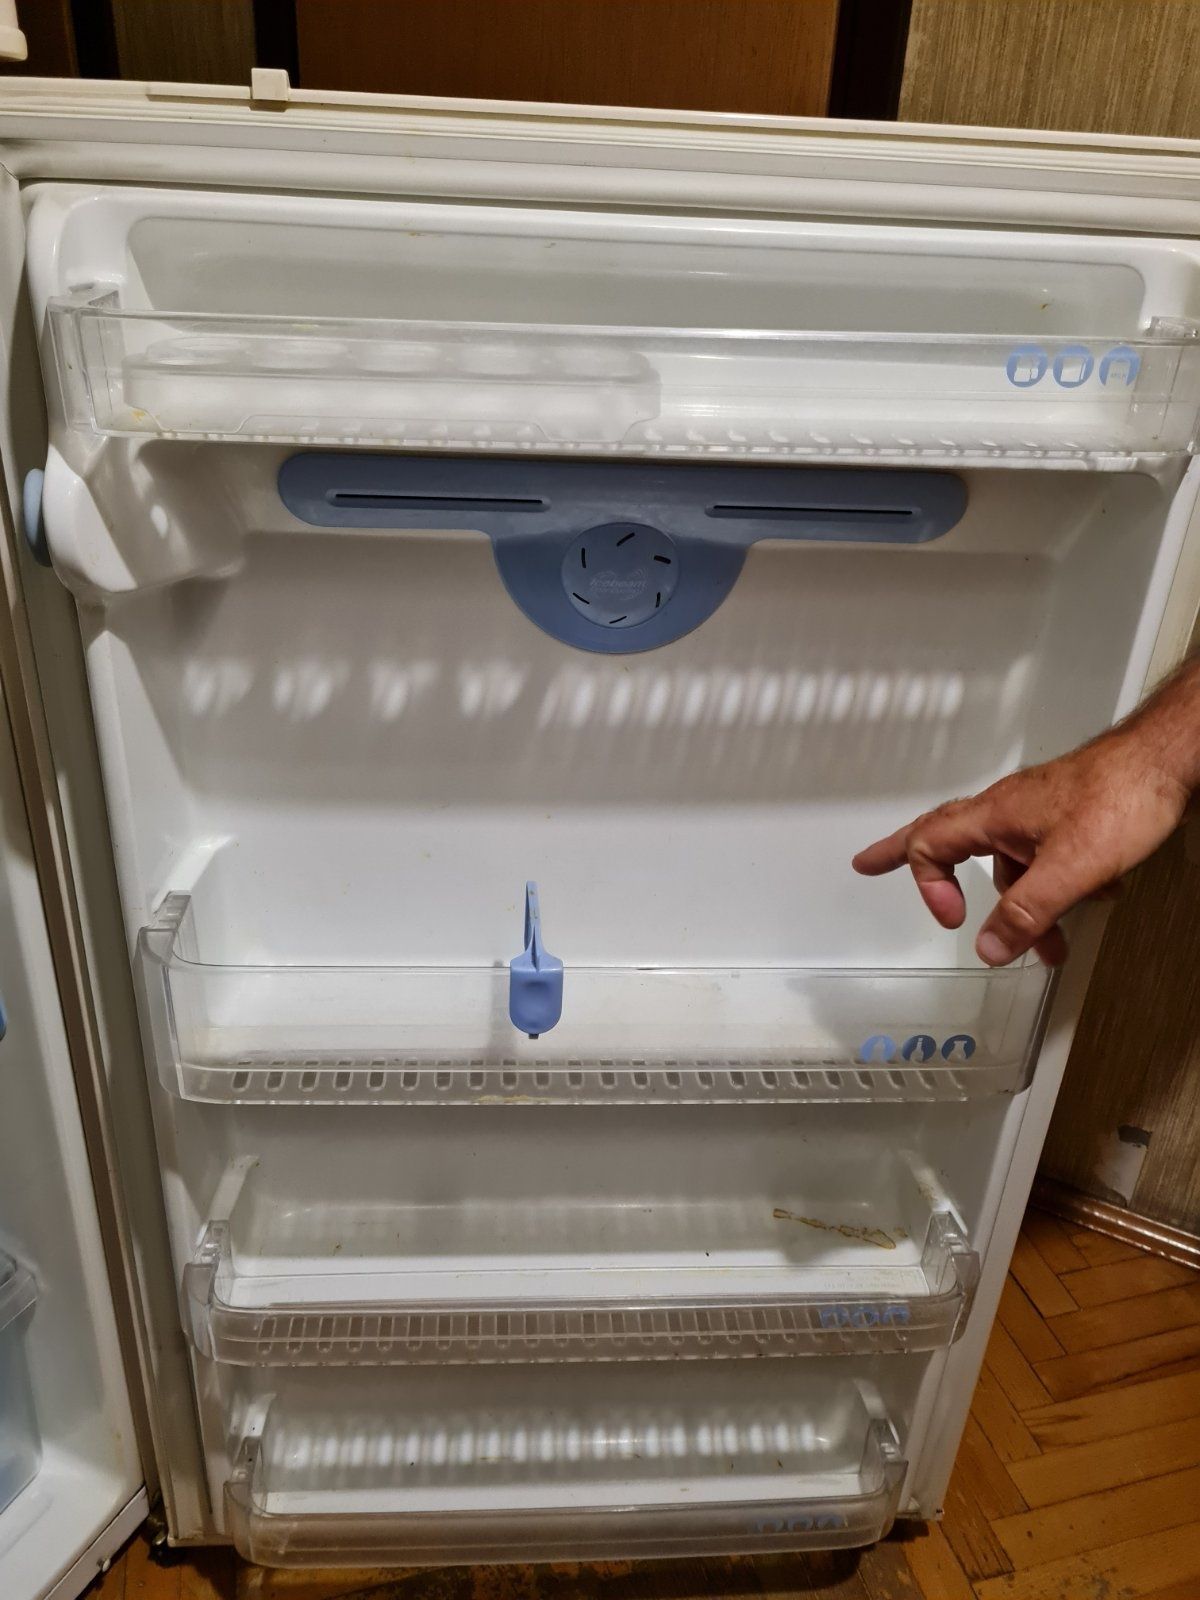 Продам холодильник LG GR-S462QVC